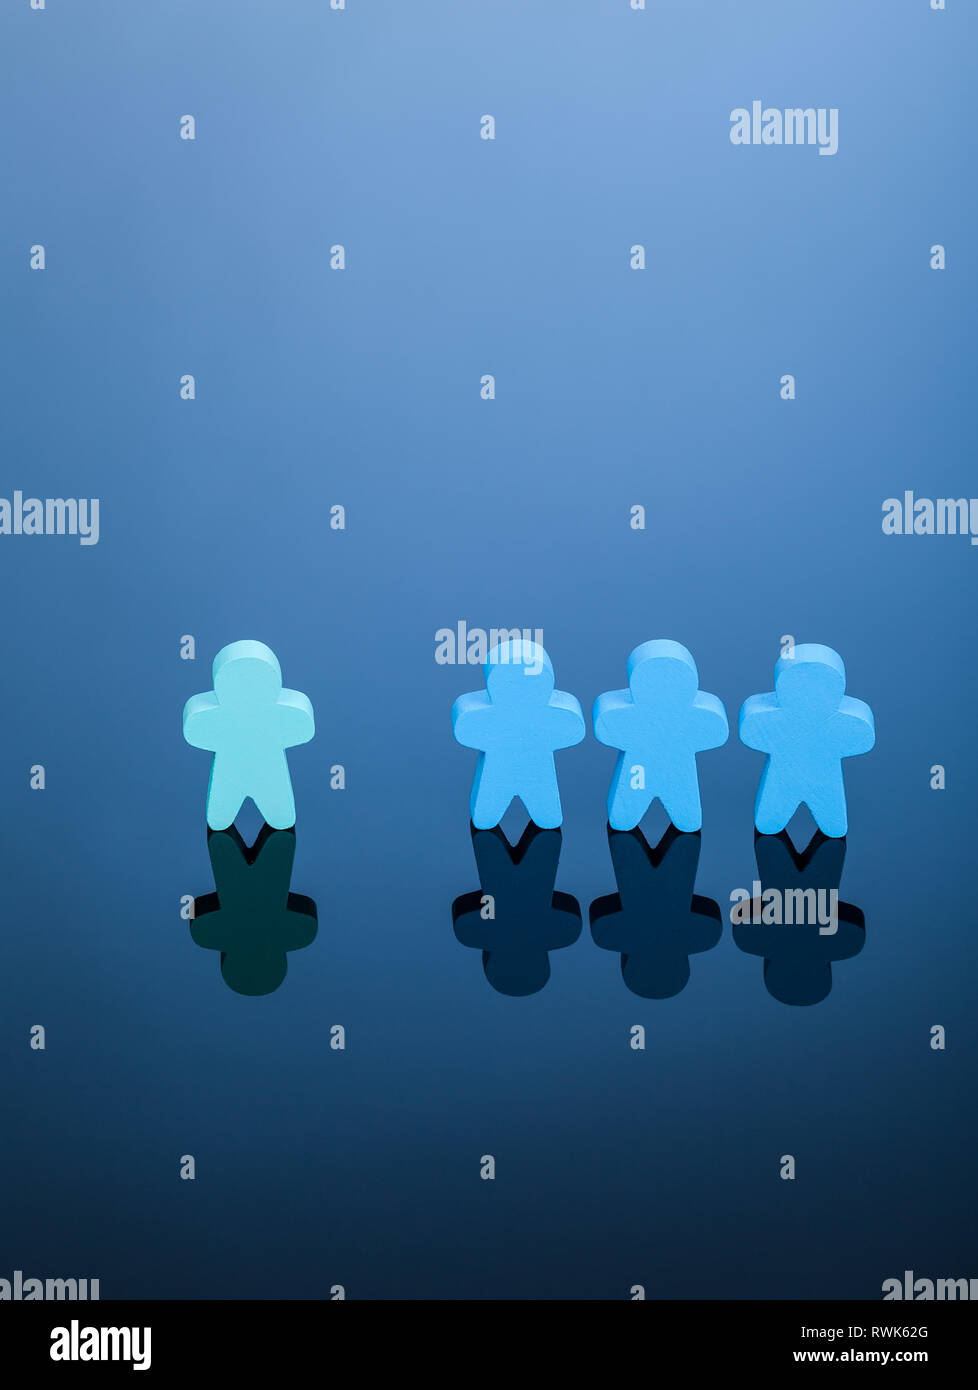 Azul de tres meeples excluir una luz verde. Imagen simple que representa el concepto de discriminación, las minorías en la sociedad o derechos desequilibrada. Foto de stock